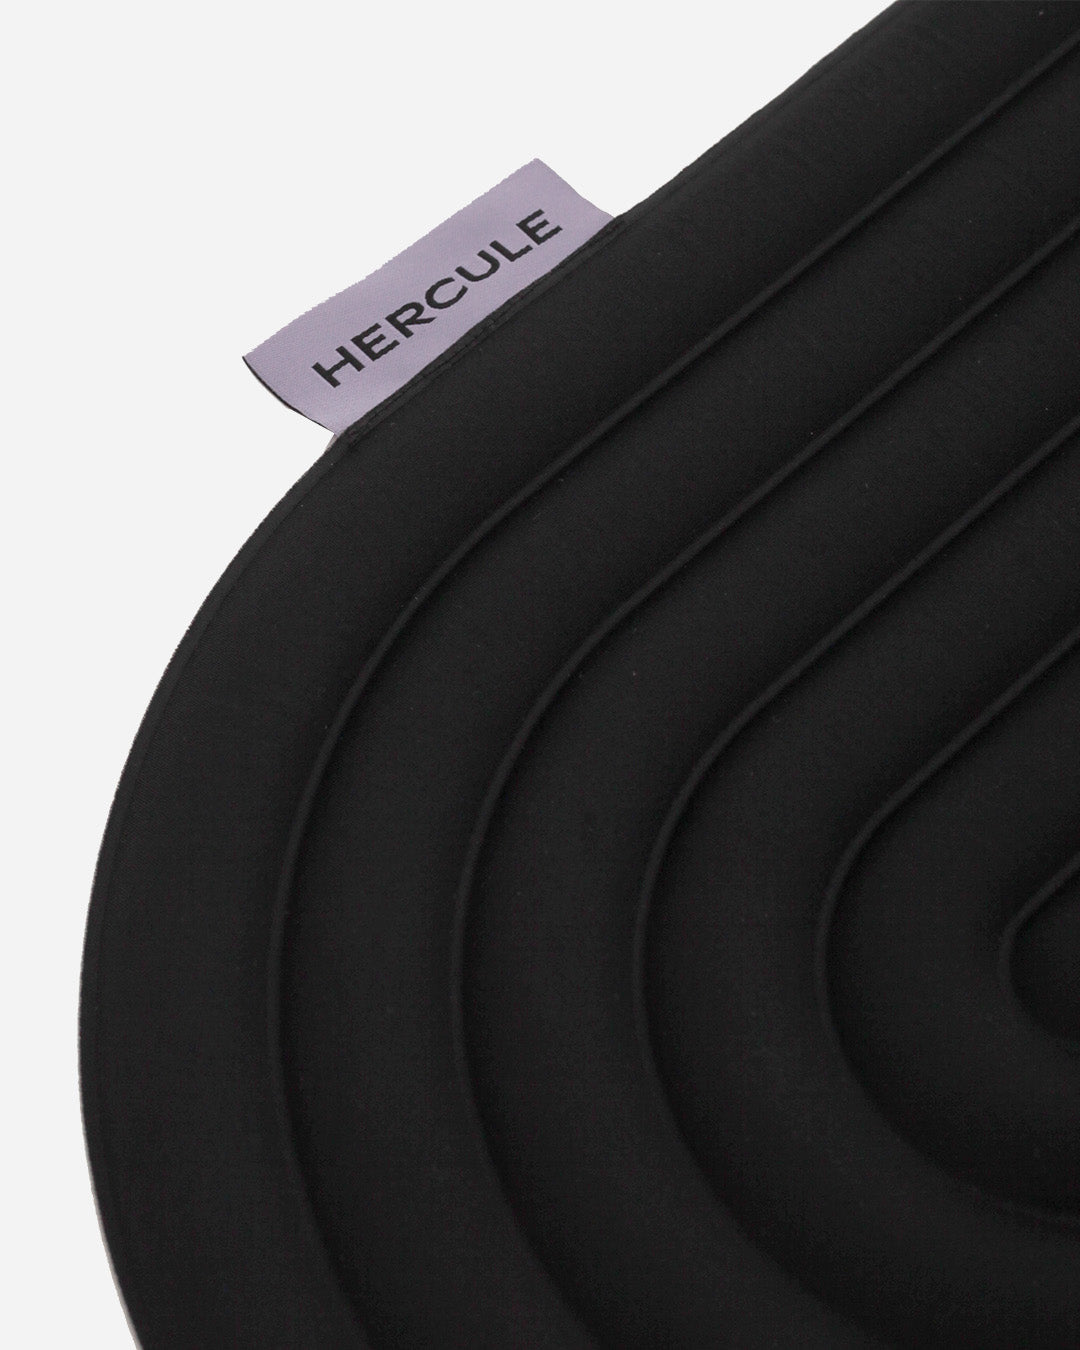 Mini tapis de sol pad de confort de la marque hercule studio modèle galé couleur outrenoir packshot zoom